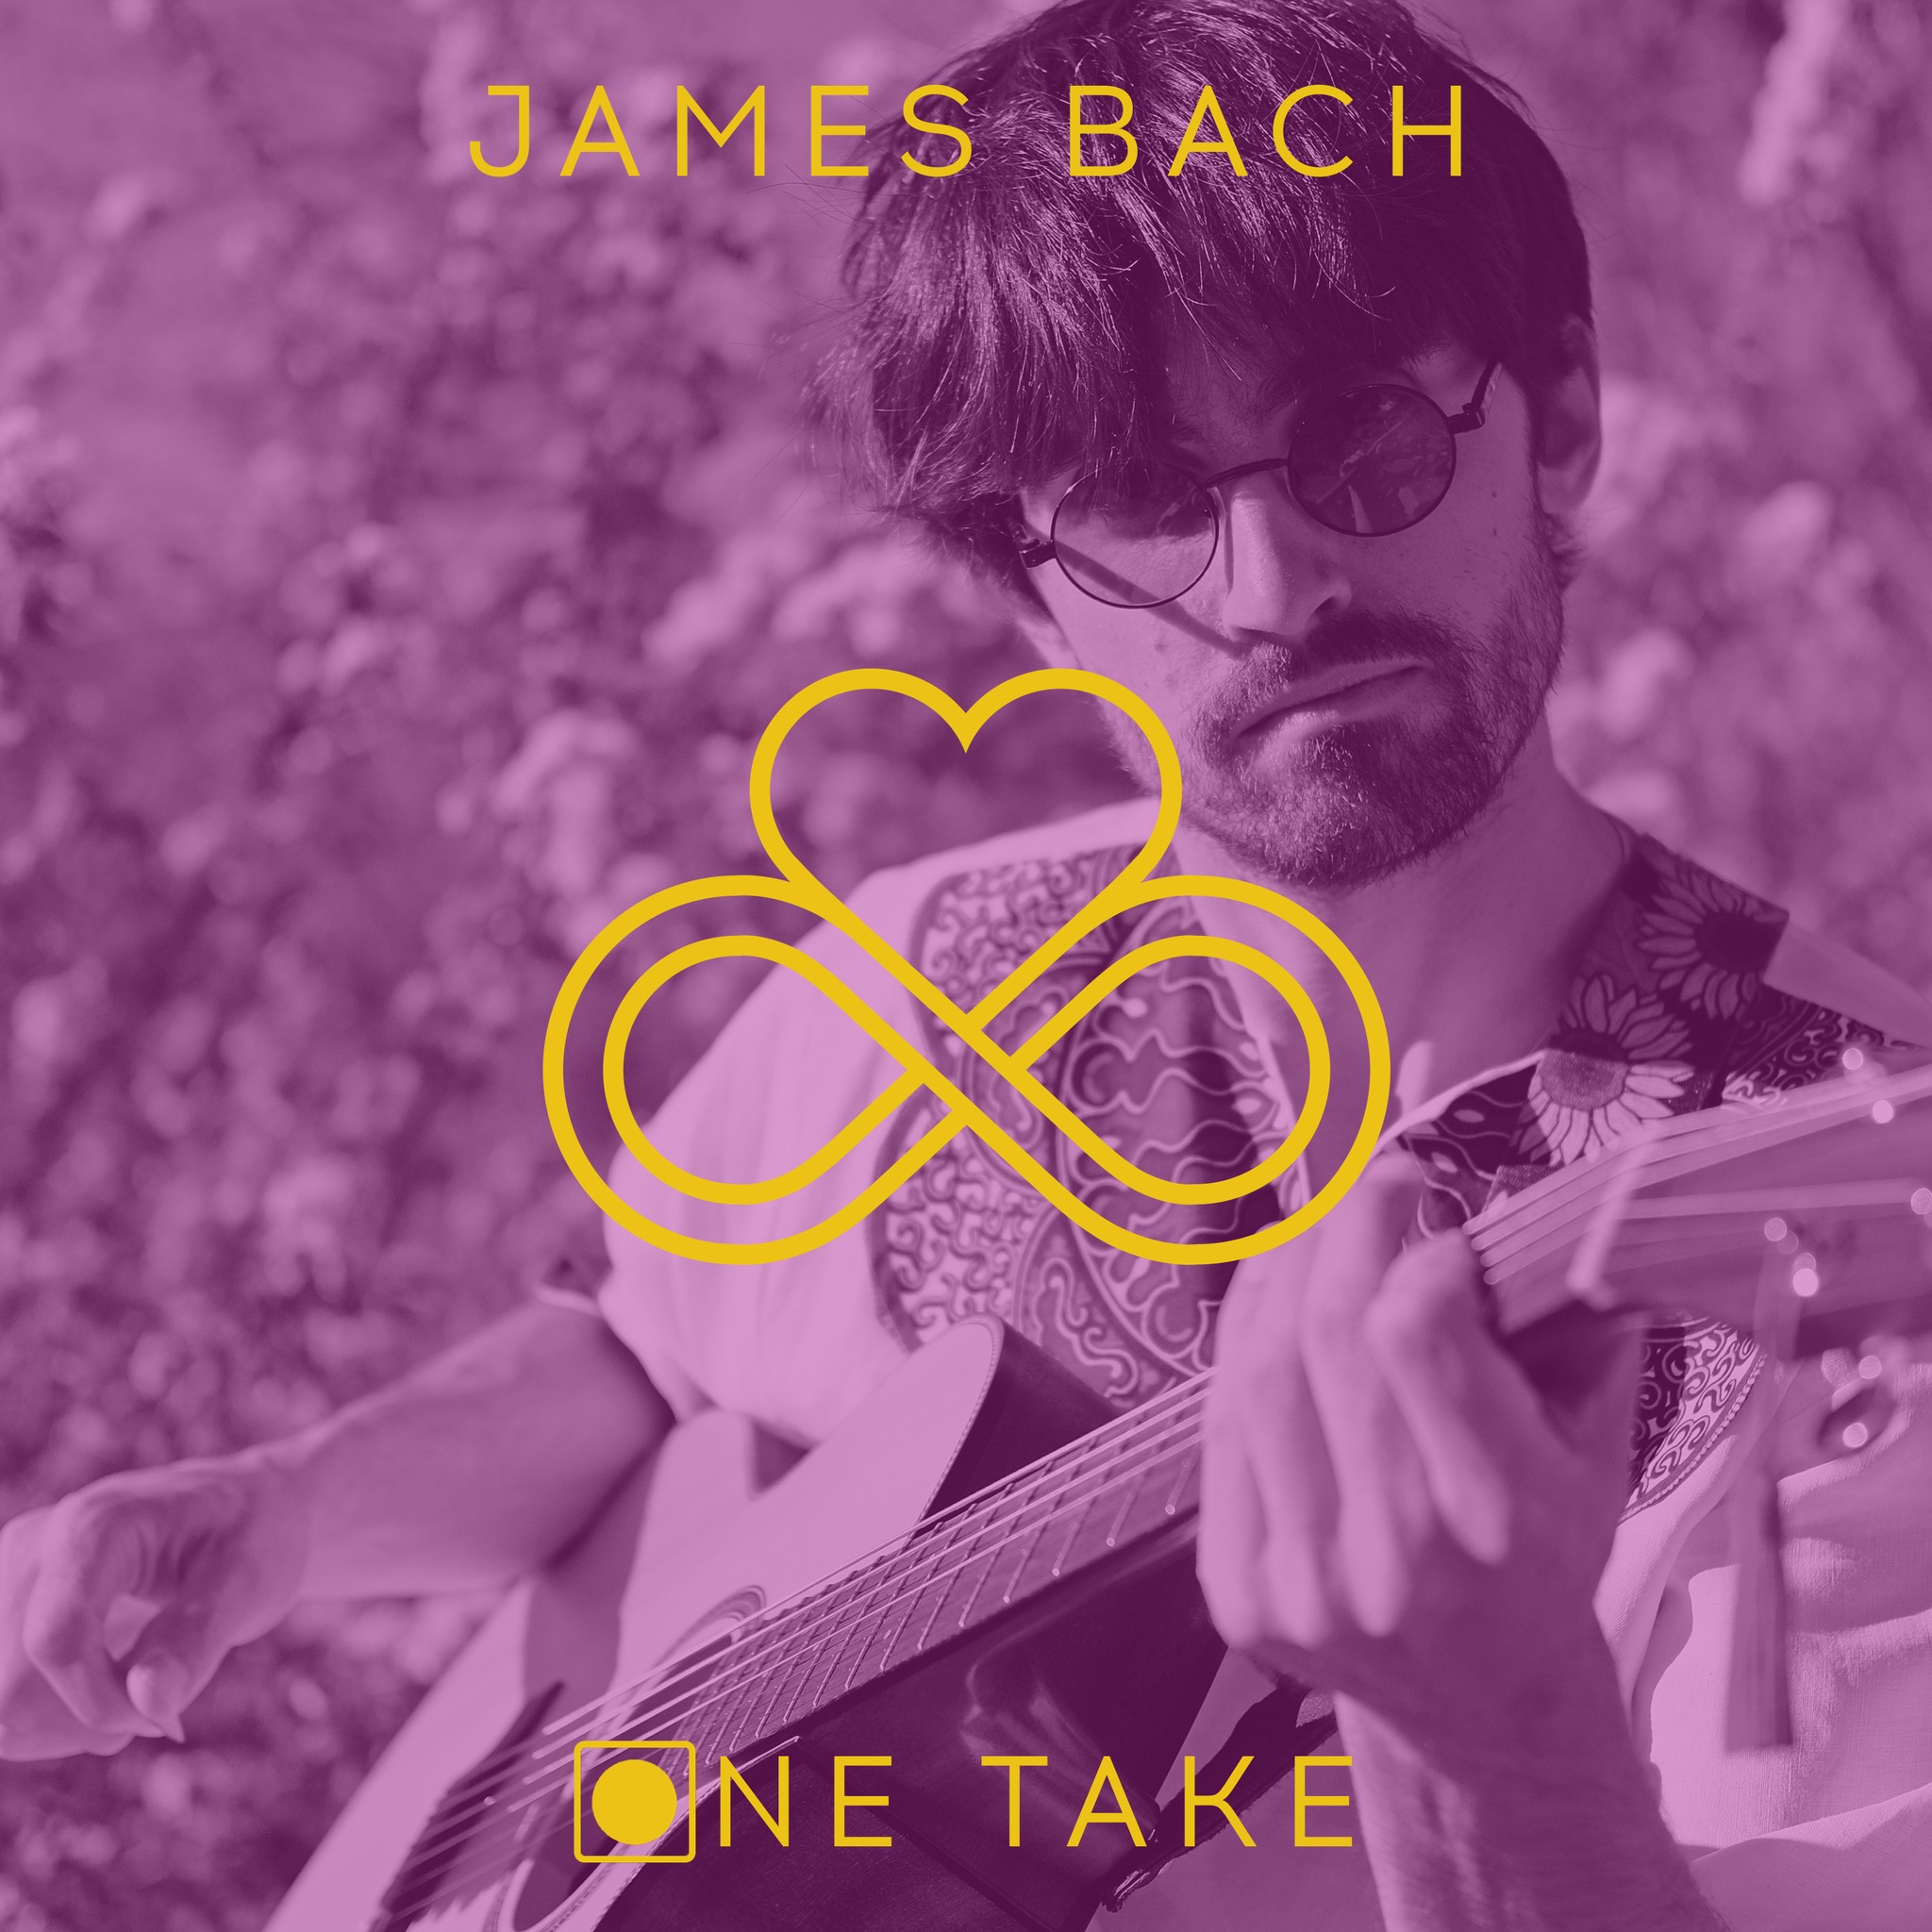 Alle Songs wurden in einem Durchgang – einem Take – eingespielt, live: Das neue Album von James Bach ist seit 1. März 2023 über die digitalen Streamingkanäle zu hören.